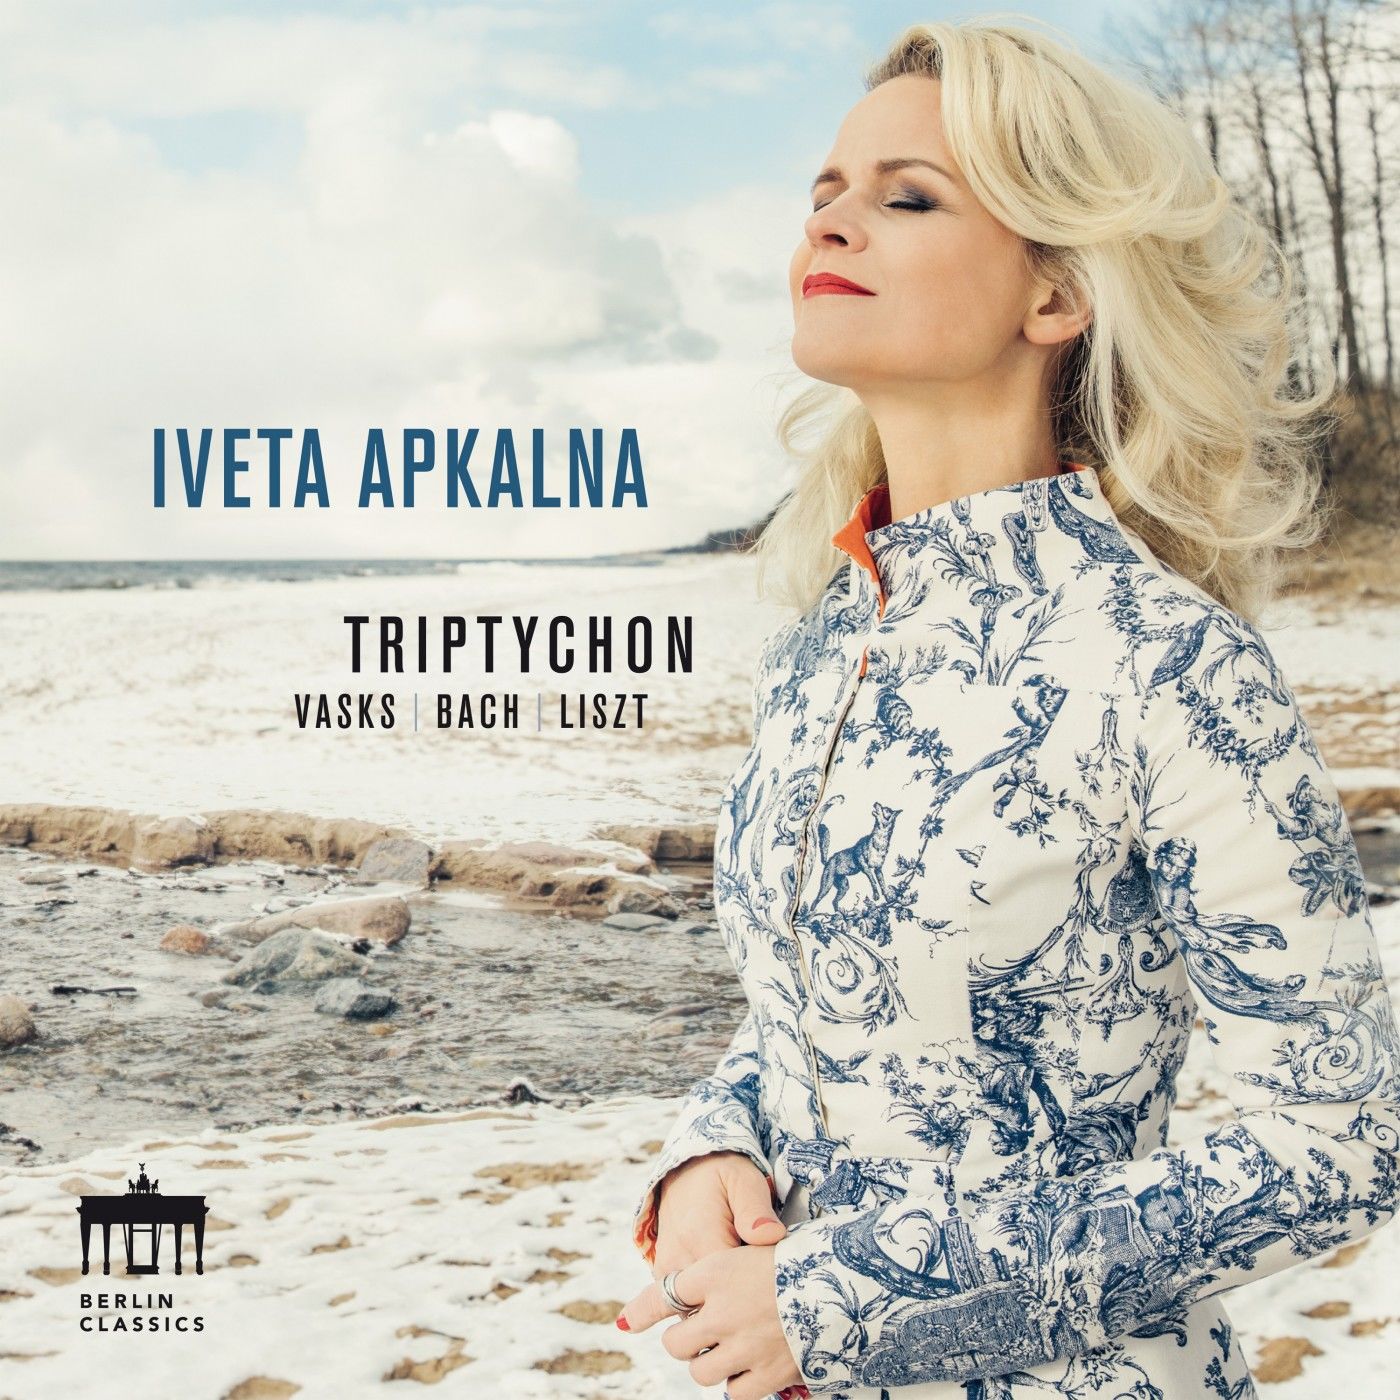 Iveta Apkalna - Triptychon (Vasks - Bach - Liszt) (2021) [FLAC 24bit/96kHz]